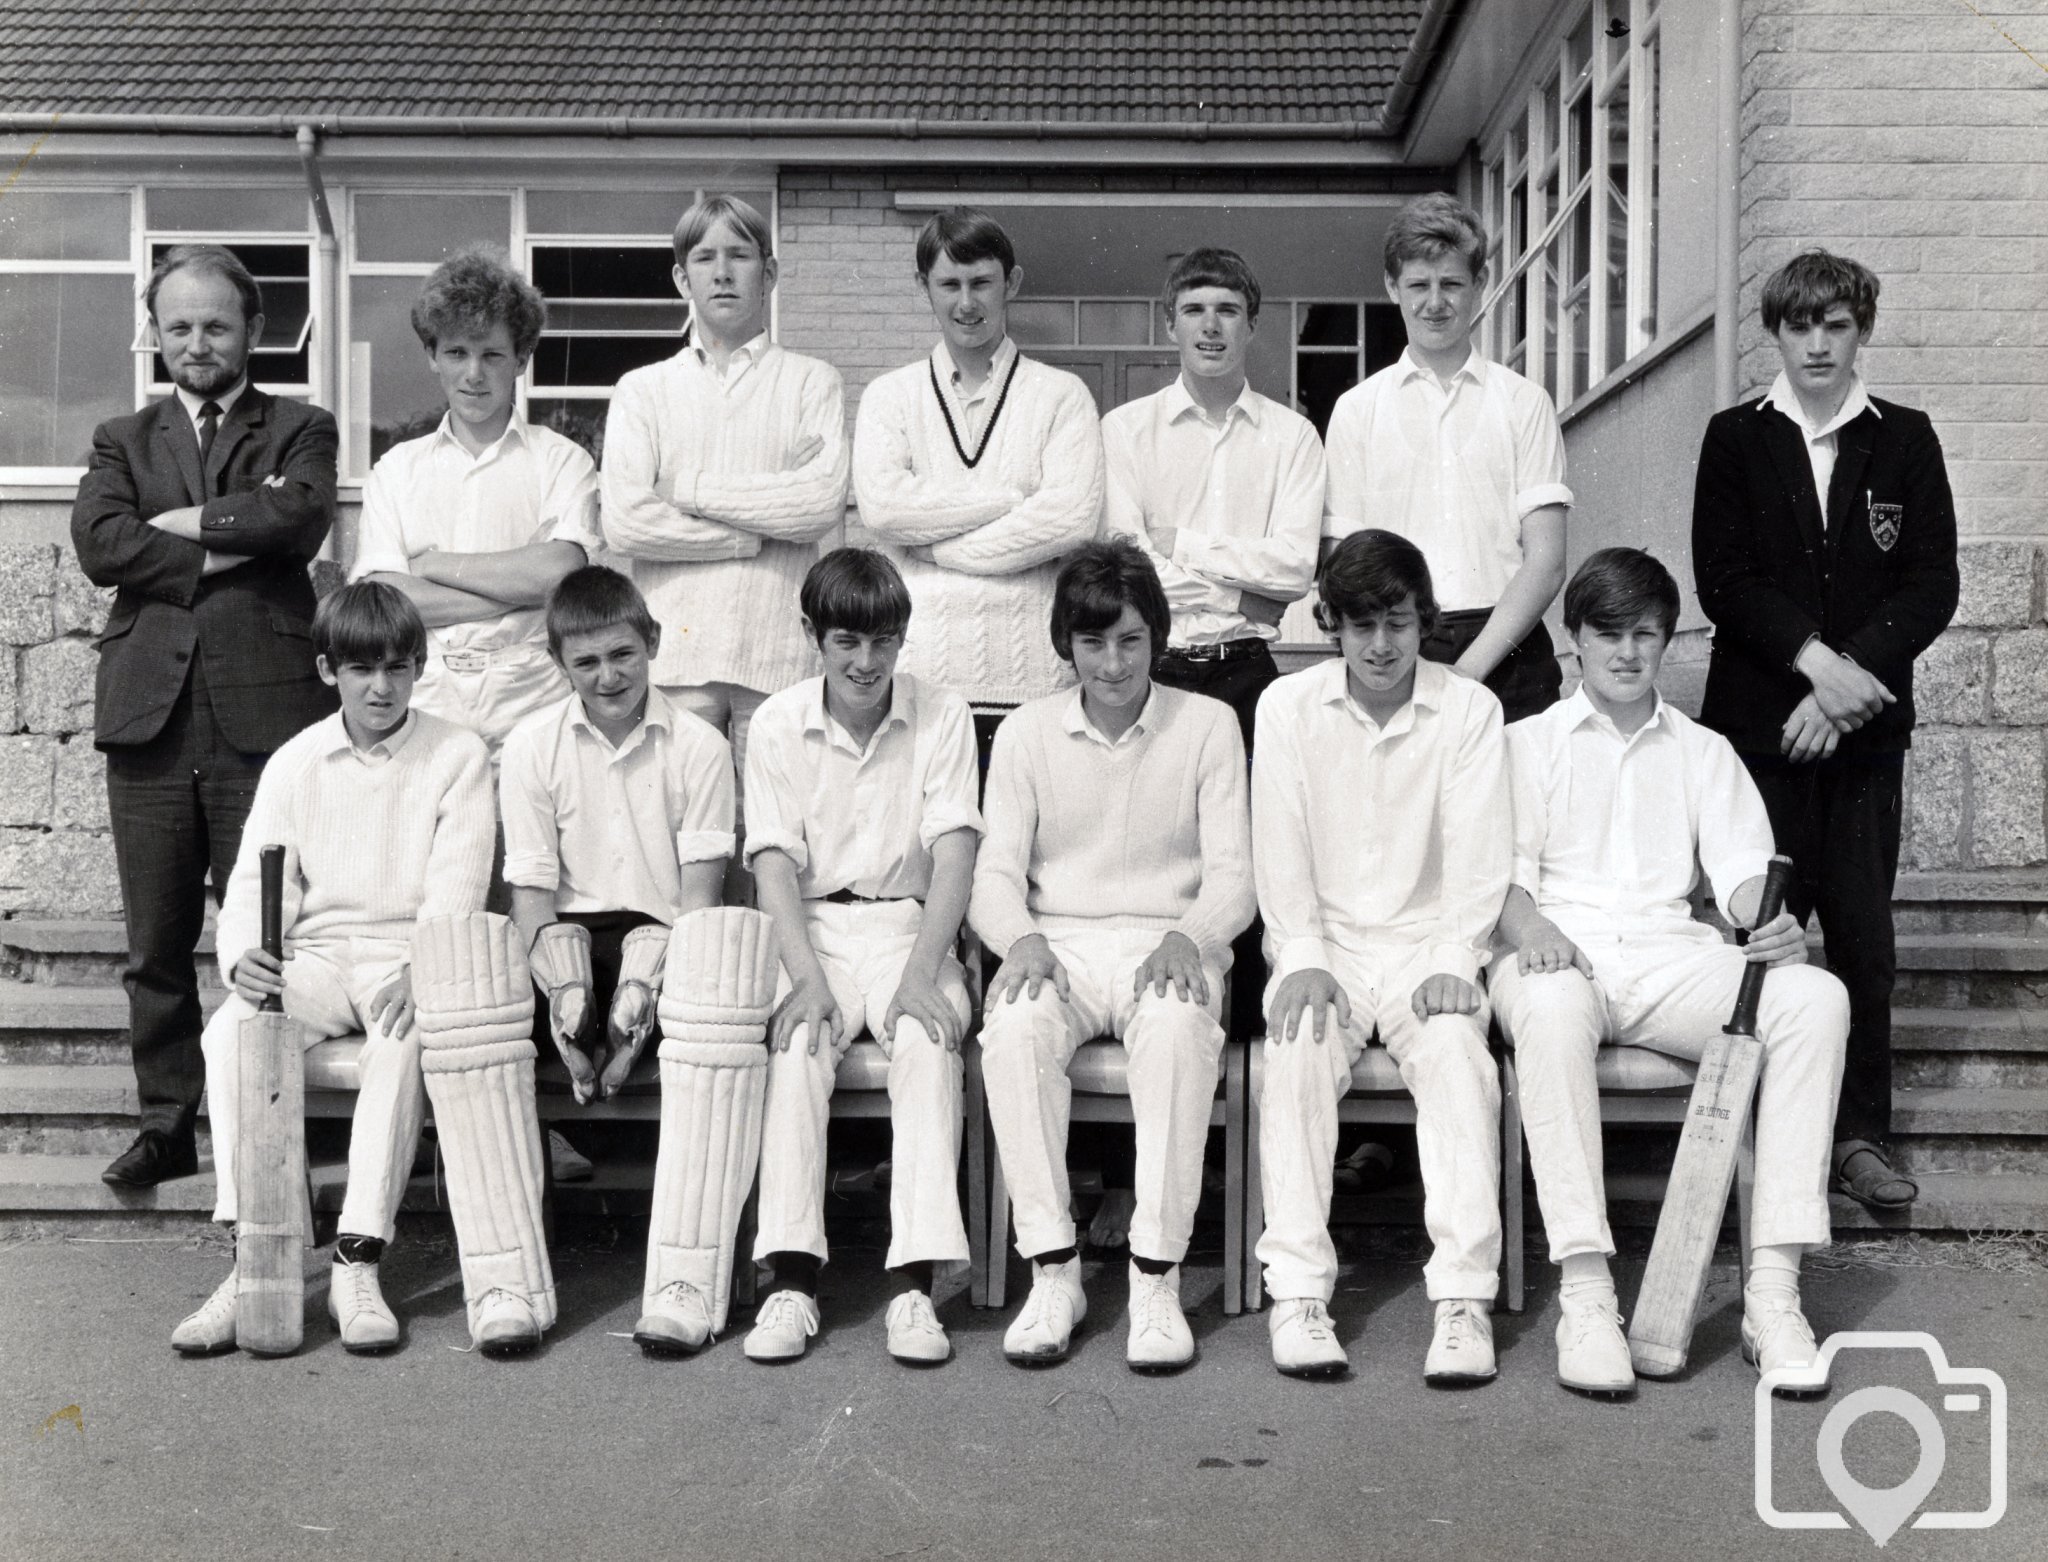 U14 Cricket Team 1968